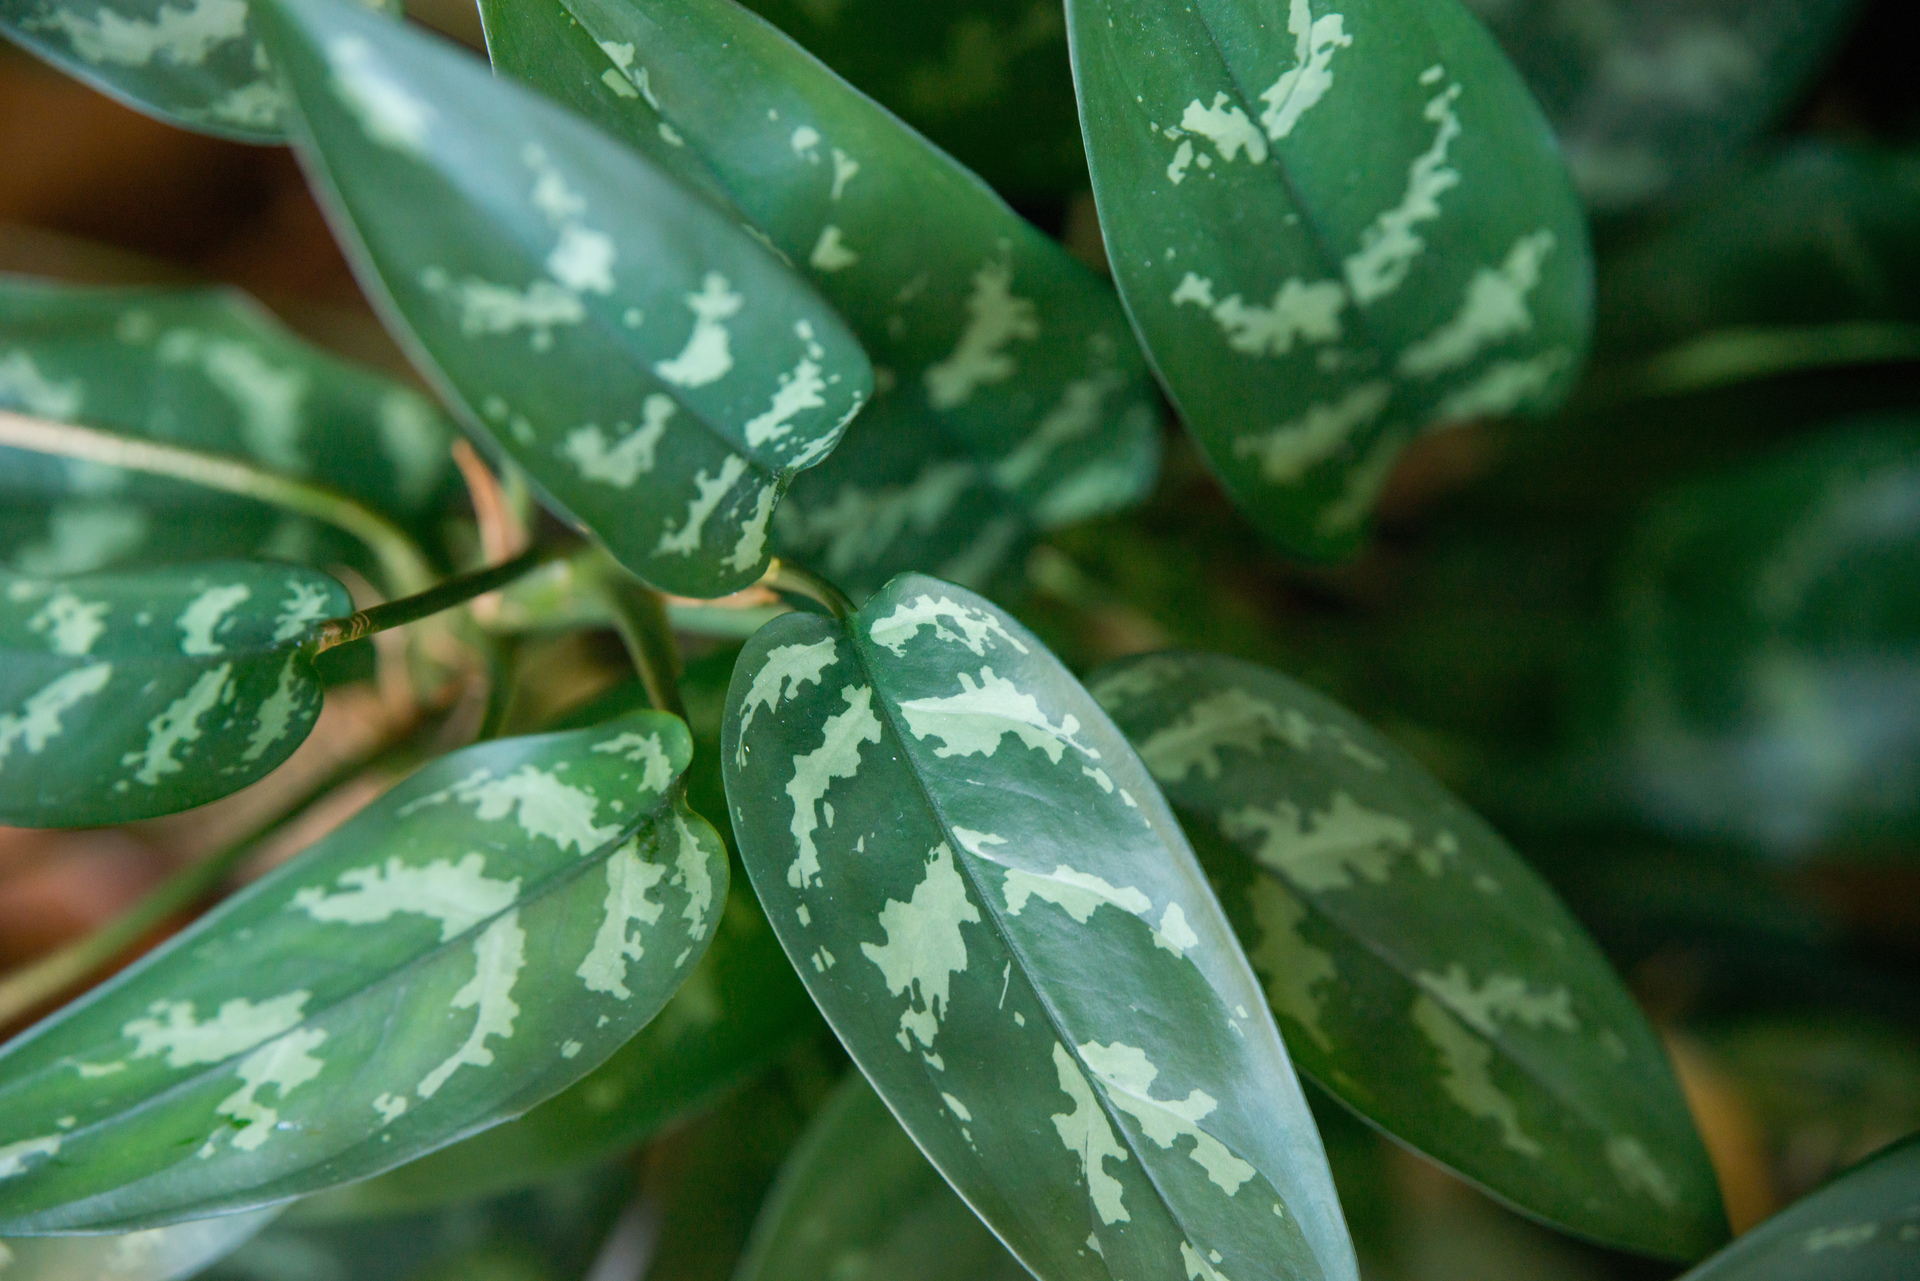 Ten obrazek przedstawia zielone liście dieffenbachii, które zachwycają swoim intensywnym, jasnym kolorem. Liście są duże i gęsto ułożone, co nadaje im gęsty i bujny wygląd. Widać na nich charakterystyczne, ciemniejsze plamy, które nadają im wyjątkowego charakteru i piękna. Całość kompozycji tworzy wrażenie naturalności i harmonii, co sprawia, że zielone liście dieffenbachii są idealnym wyborem do dekoracji każdego wnętrza i dodają uroku każdemu pomieszczeniu.